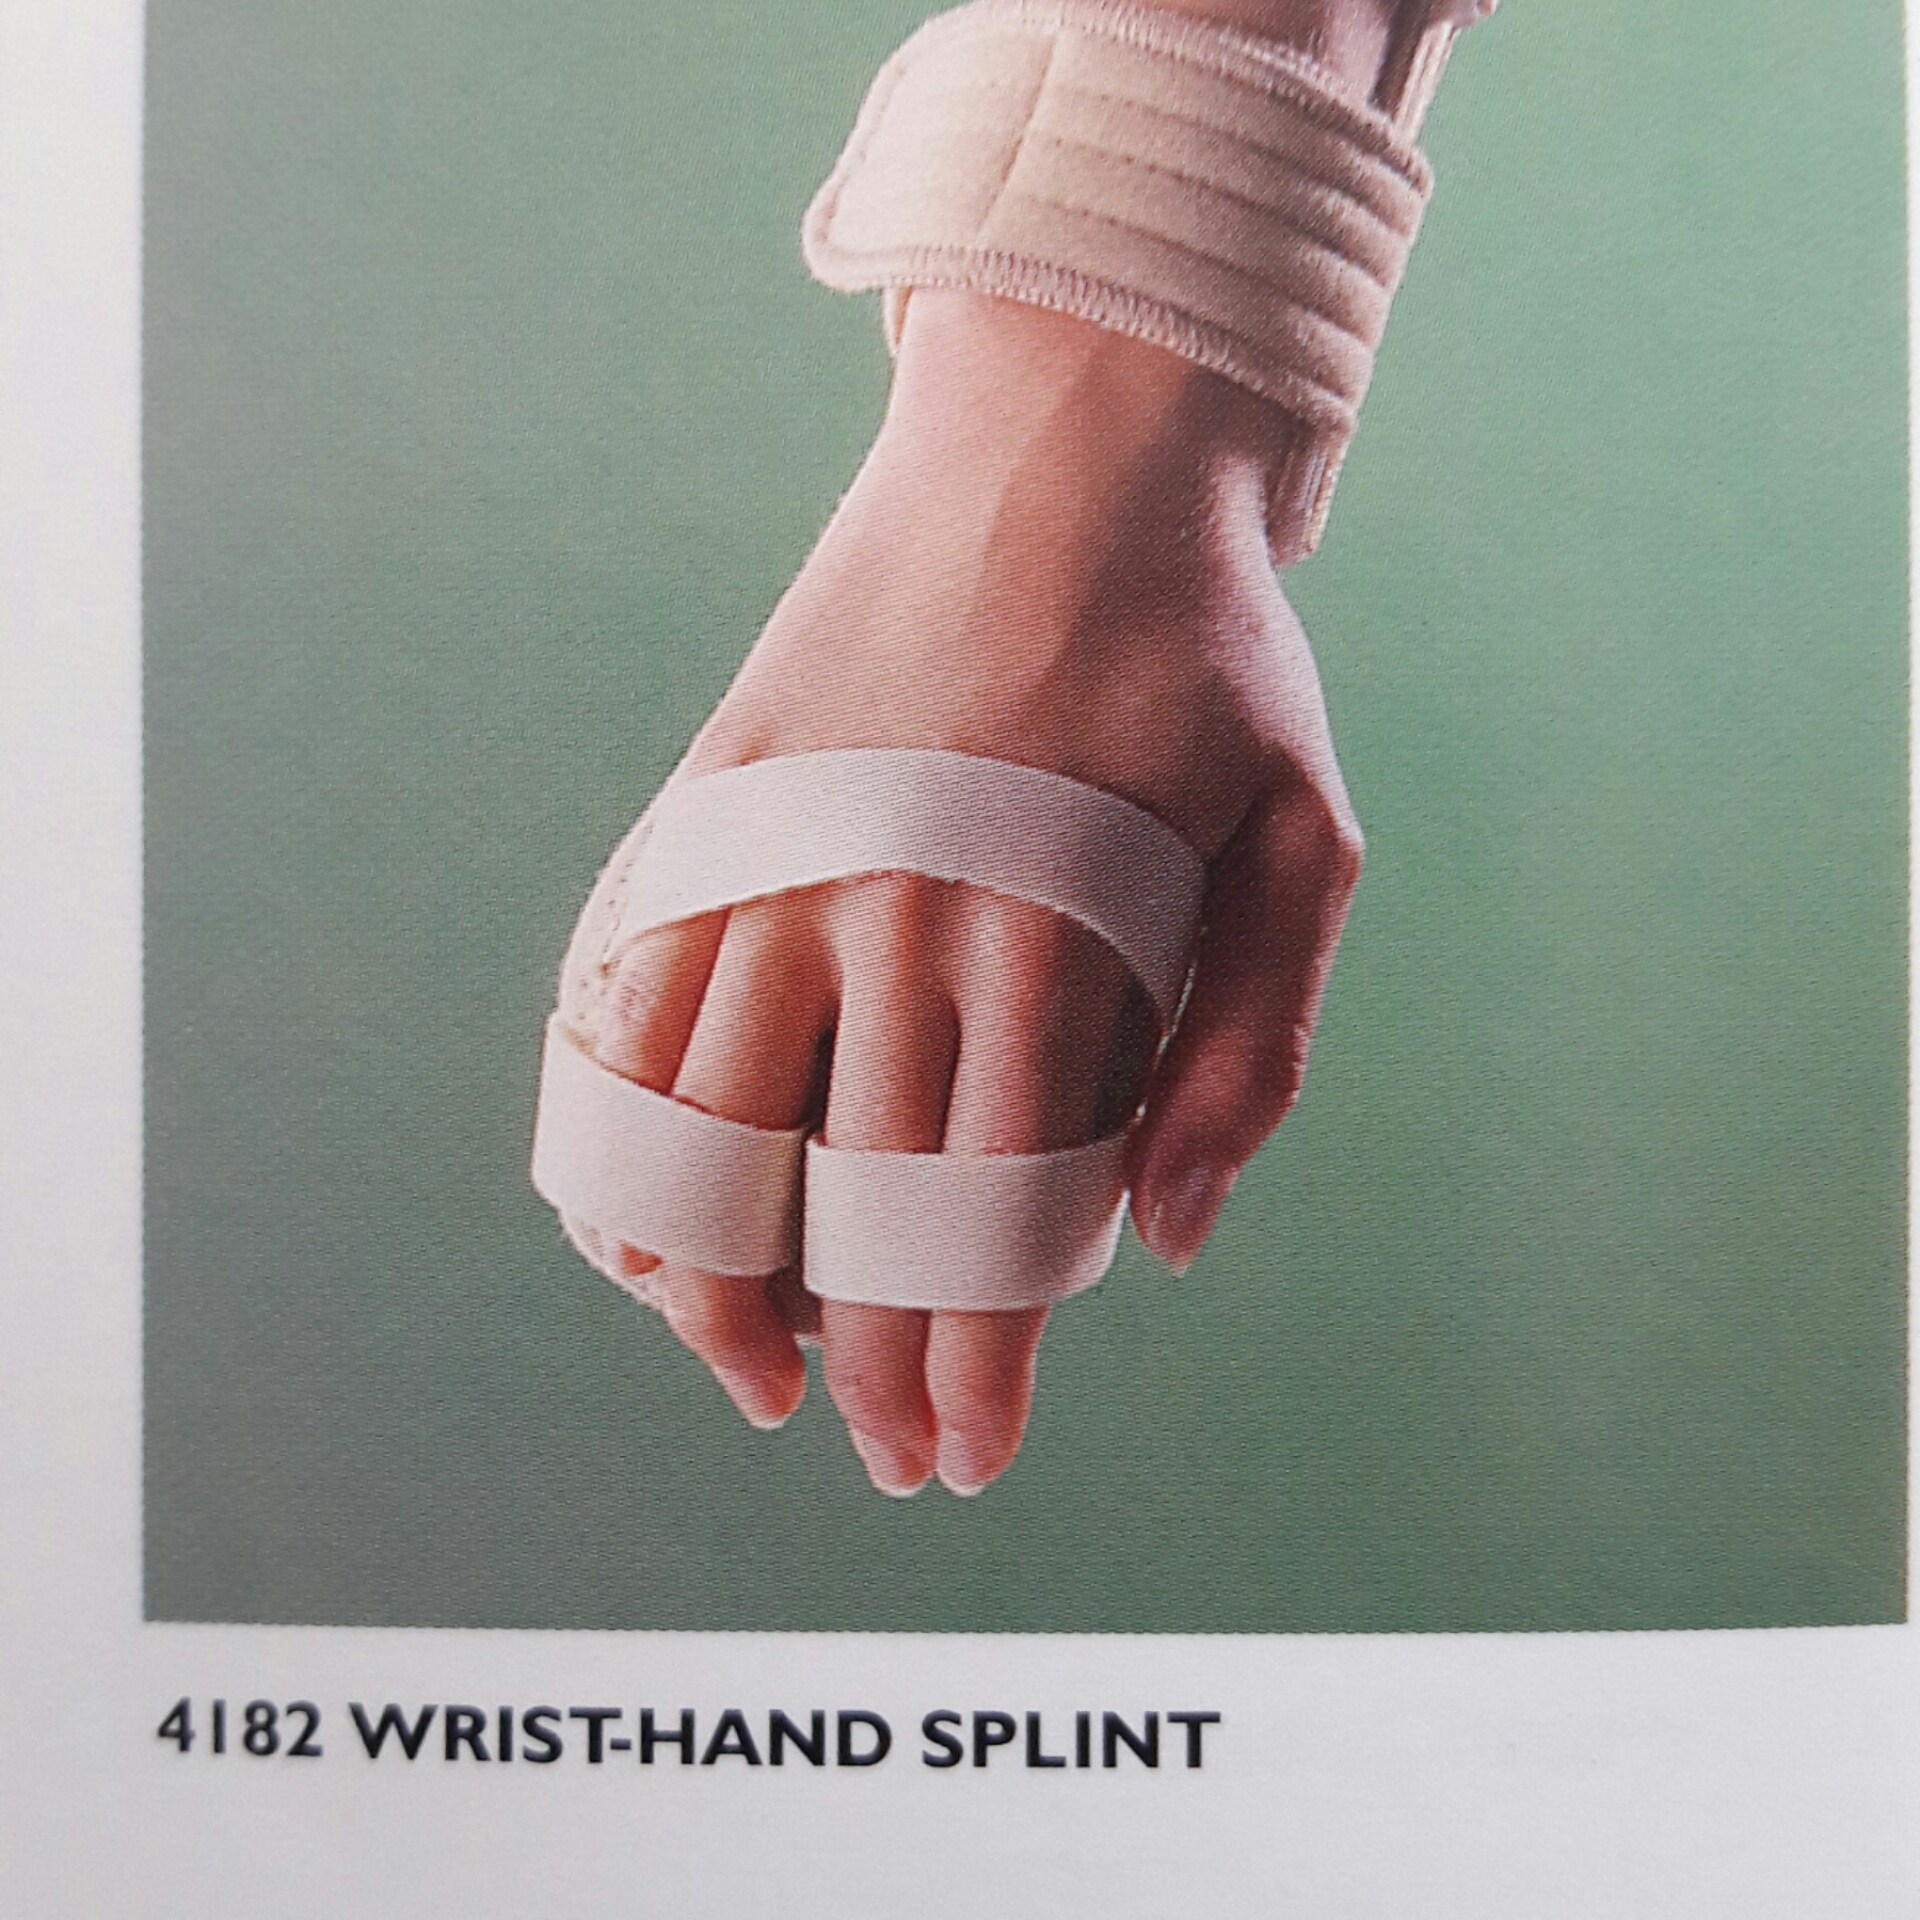 WRIST HAND SPLINT 4182 OPPO